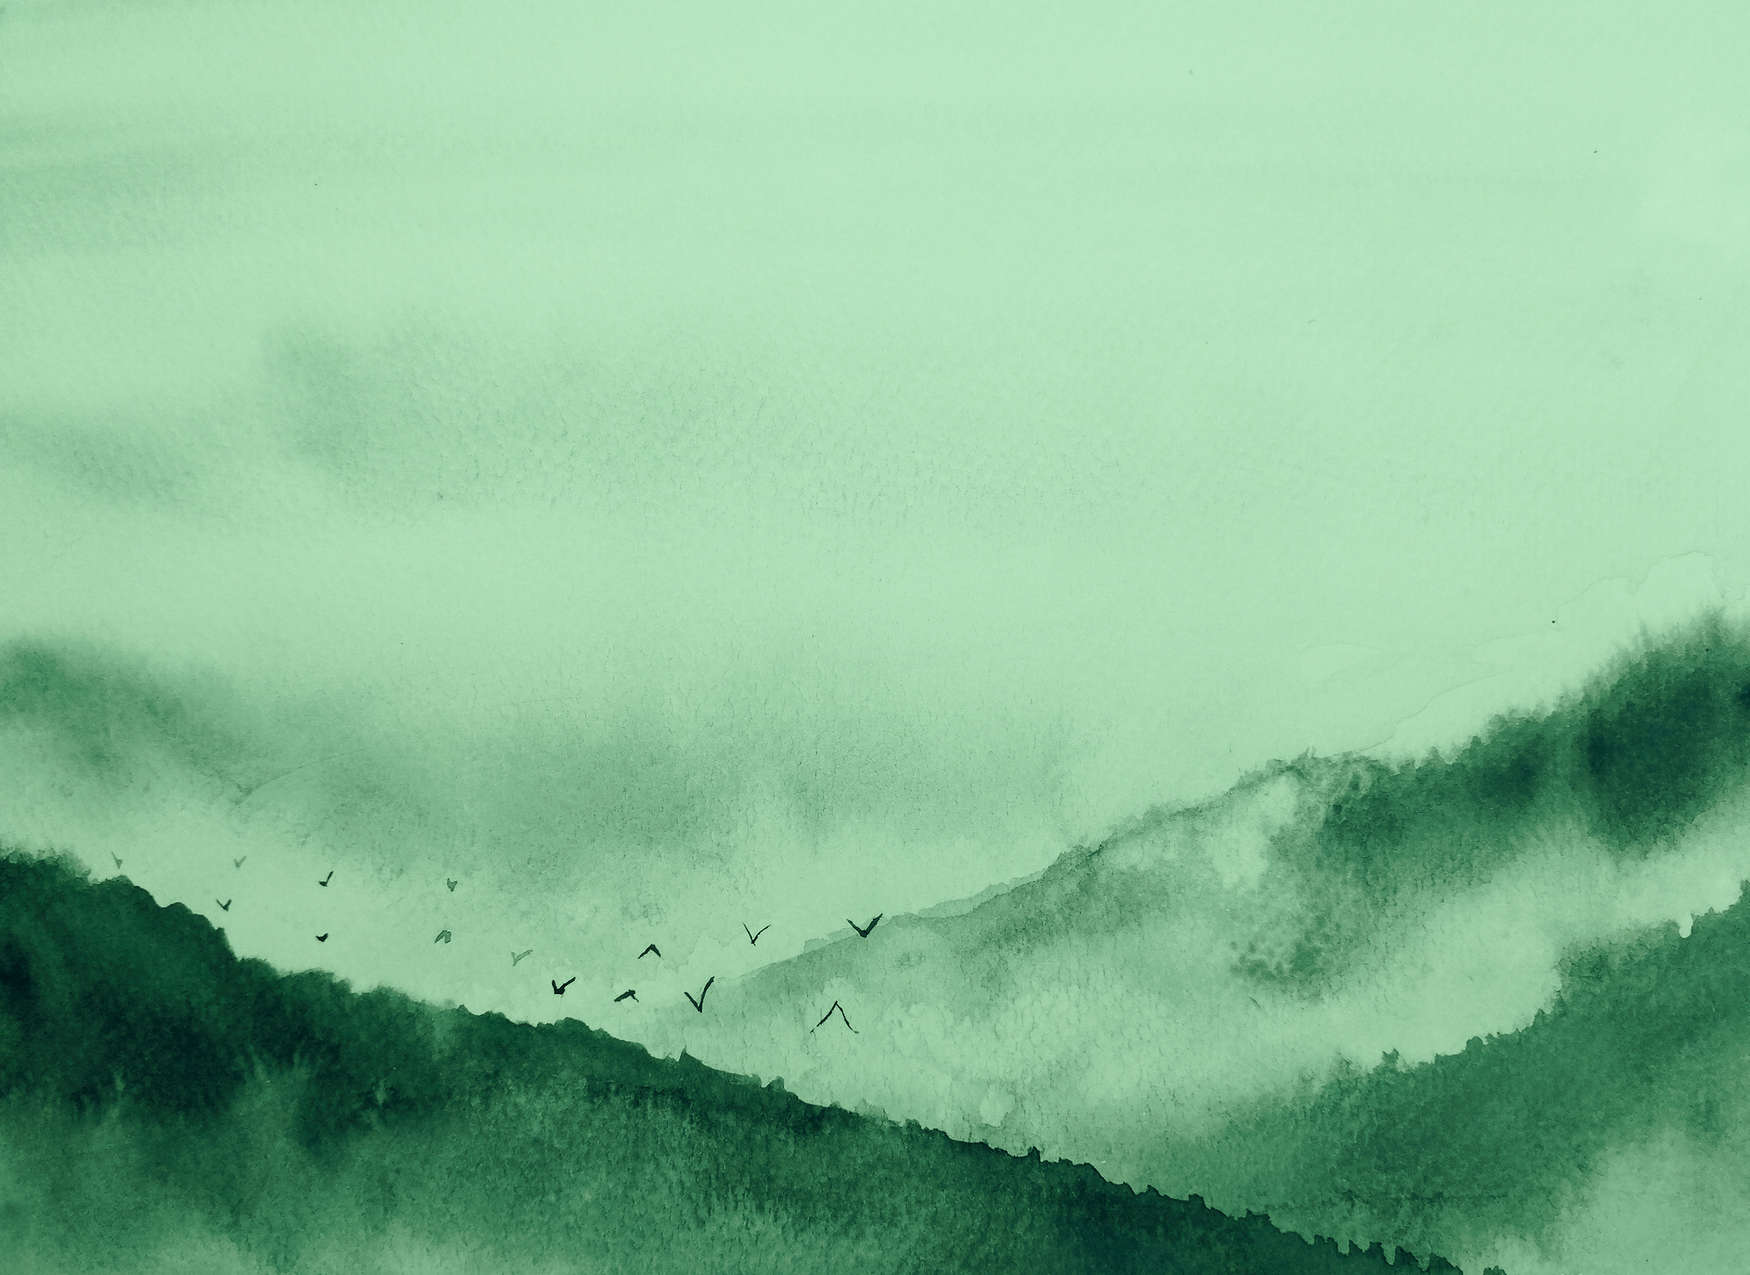             Paisaje con niebla en estilo de pintura - Verde, Negro
        